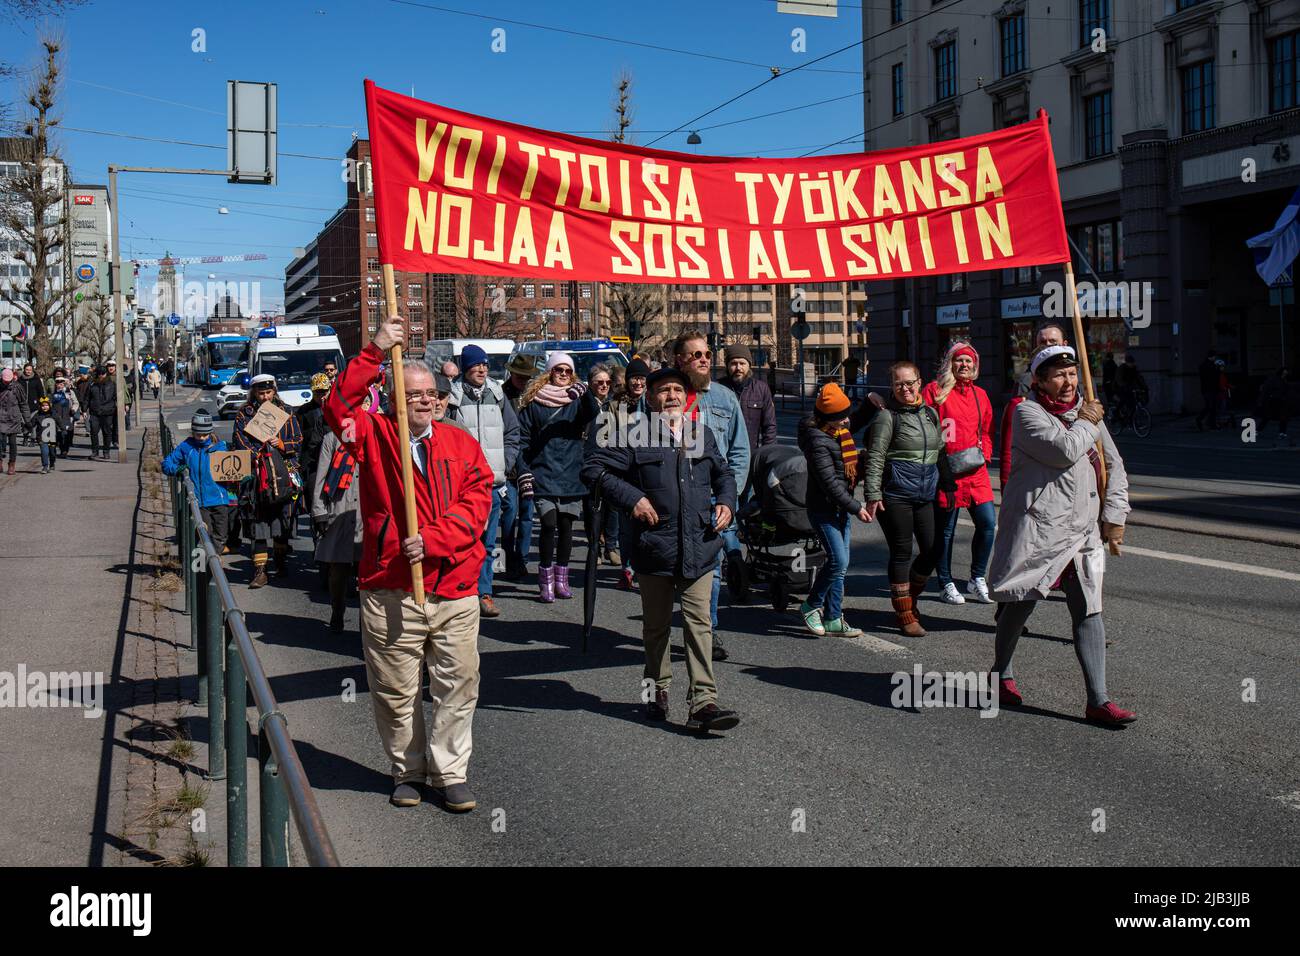 Voittoisa työkansa nojaa sosialismiin. Rotes Banner bei der sozialistischen Parade zum 1. Mai beim Internationalen Arbeitertag in Helsinki, Finnland. Stockfoto